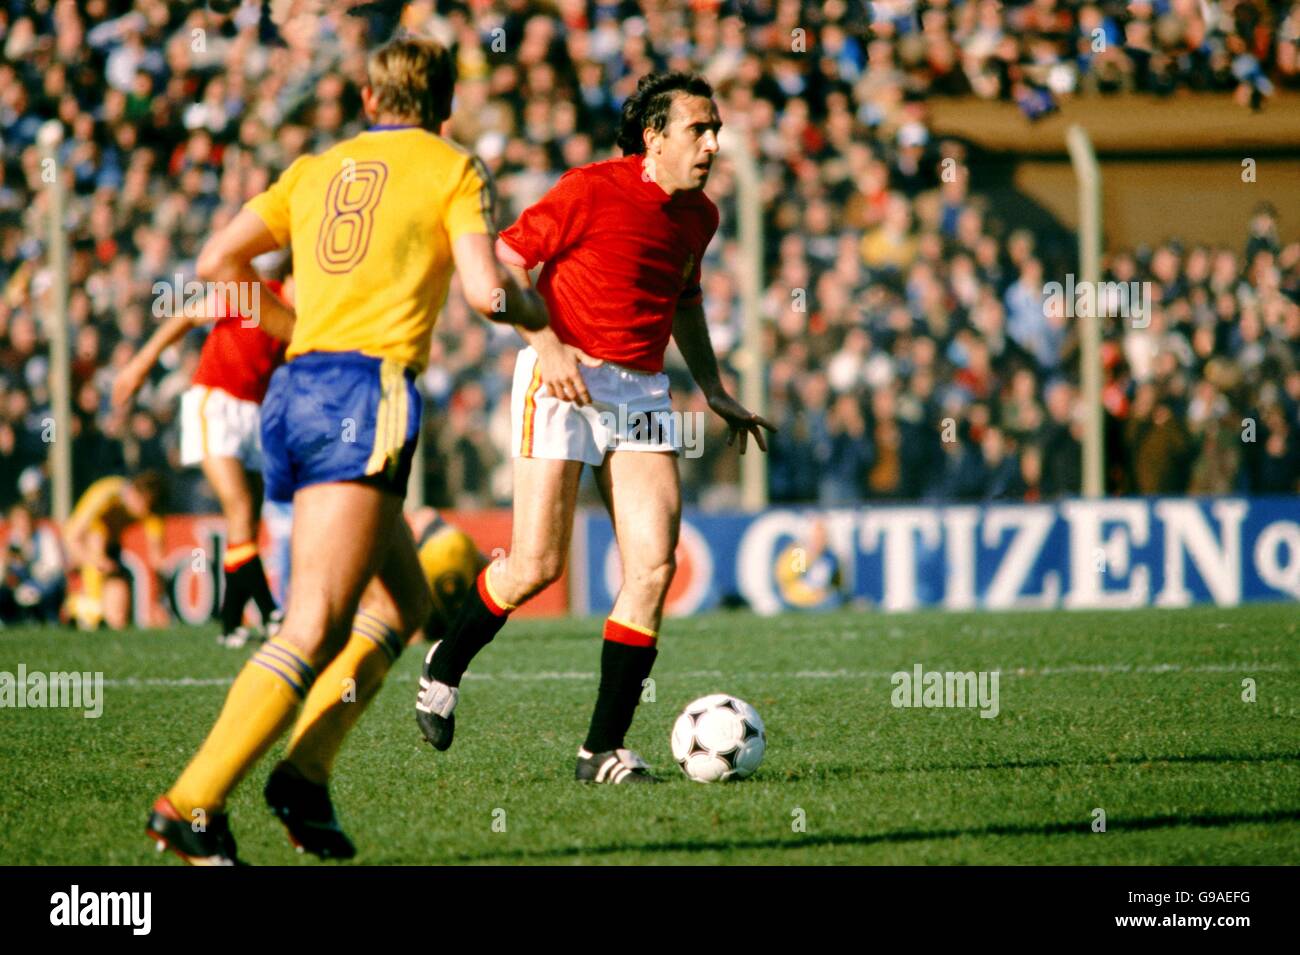 Calcio - Coppa del mondo Argentina 1978 - Gruppo tre - Spagna contro Svezia. Asensi, Spagna (r) Foto Stock